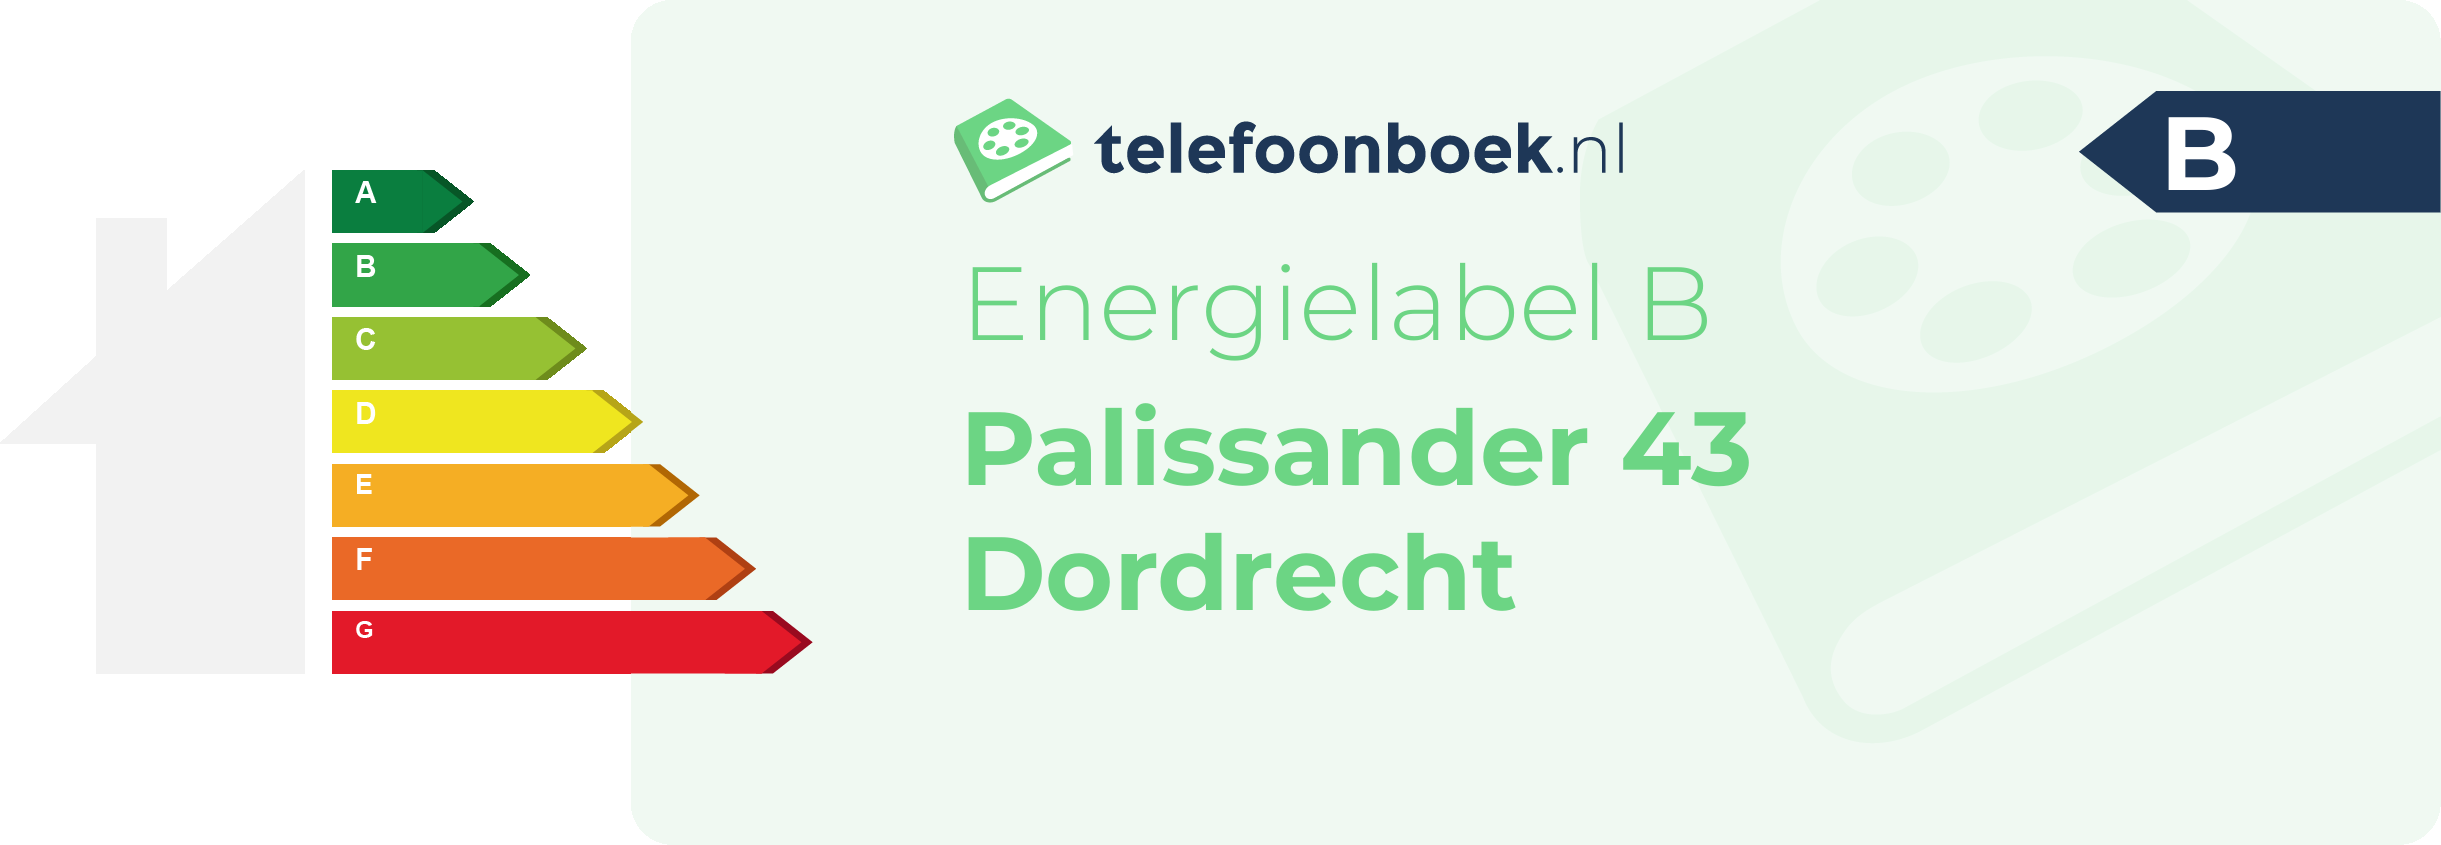 Energielabel Palissander 43 Dordrecht